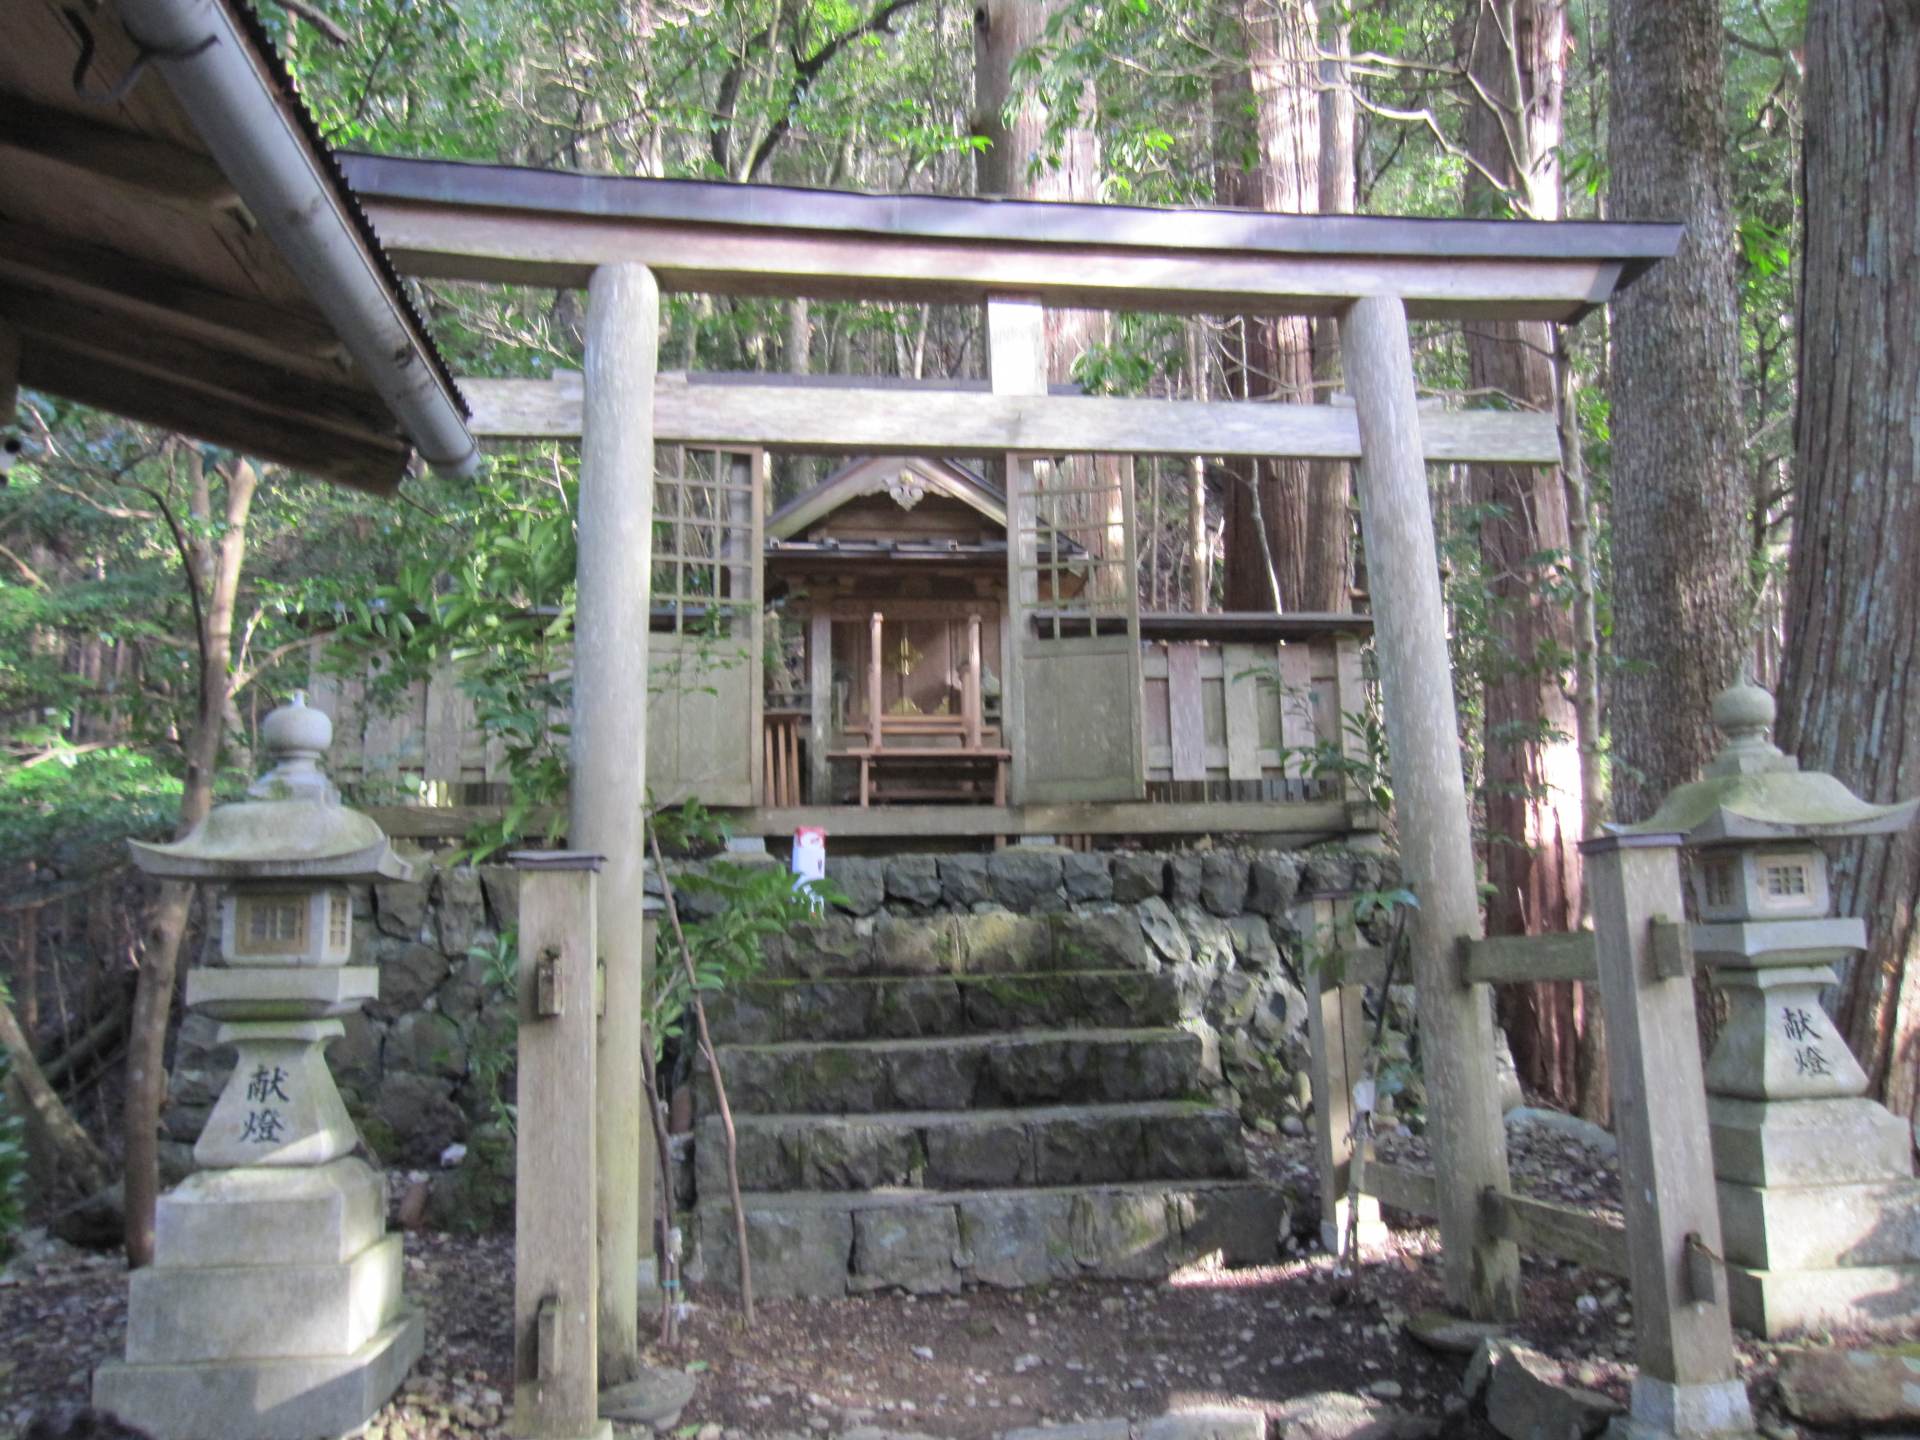 "Shinohara Odori" está dedicado en el Santuario Tenman. Ha sido transmitido en el área de Shinohara, que desciende del ``Furyu Odori'' que fue popular a finales de la Edad Media y principios de los tiempos modernos.